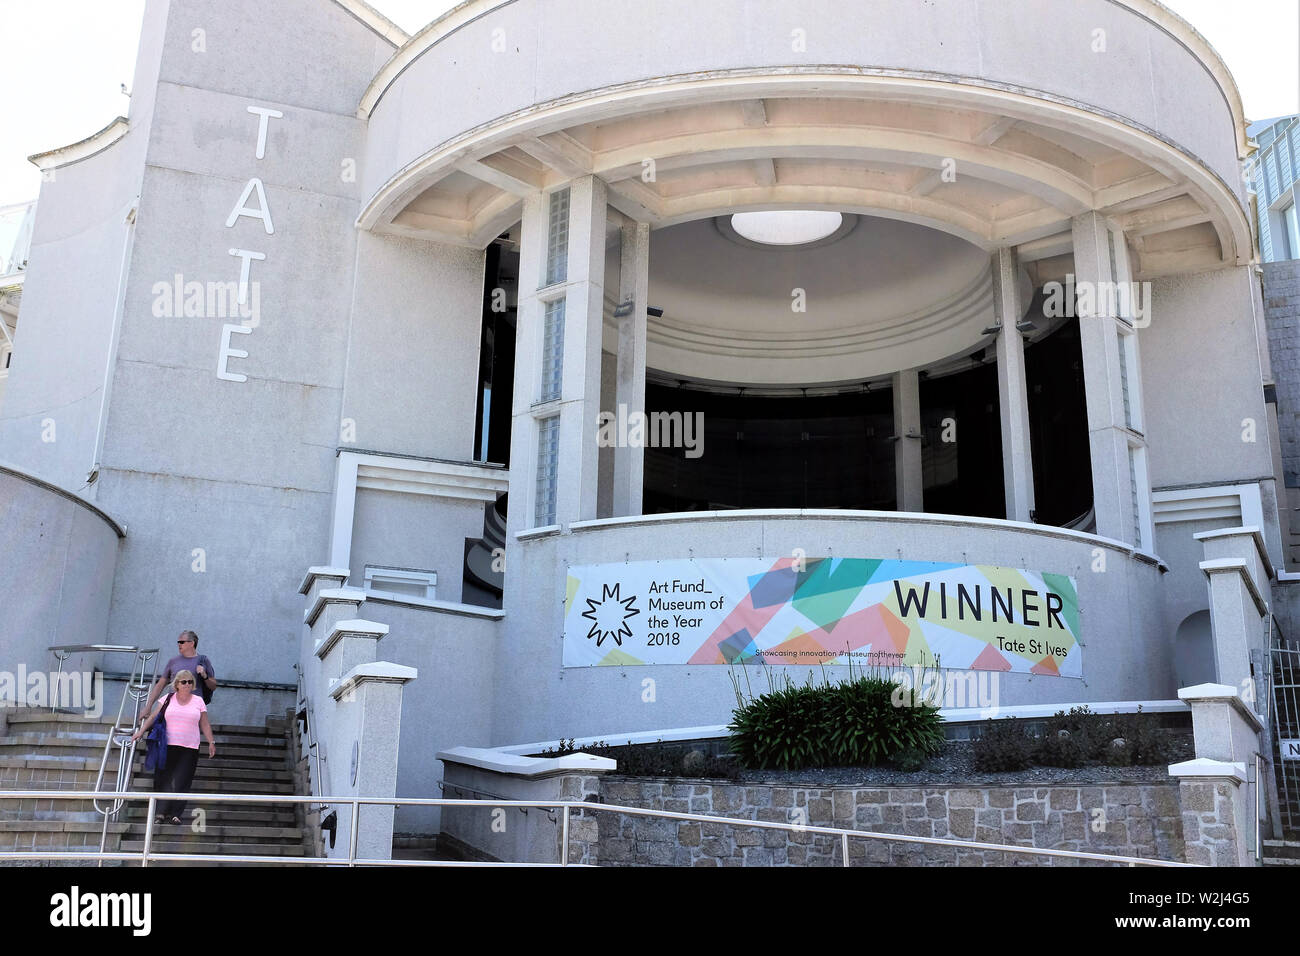 St Ives, Cornwall, UK. Le 27 juin 2019. Les visiteurs quitter la Tate Gallery présentant des travaux par les artistes britanniques modernes avec des liens vers la zone locale à St. Banque D'Images